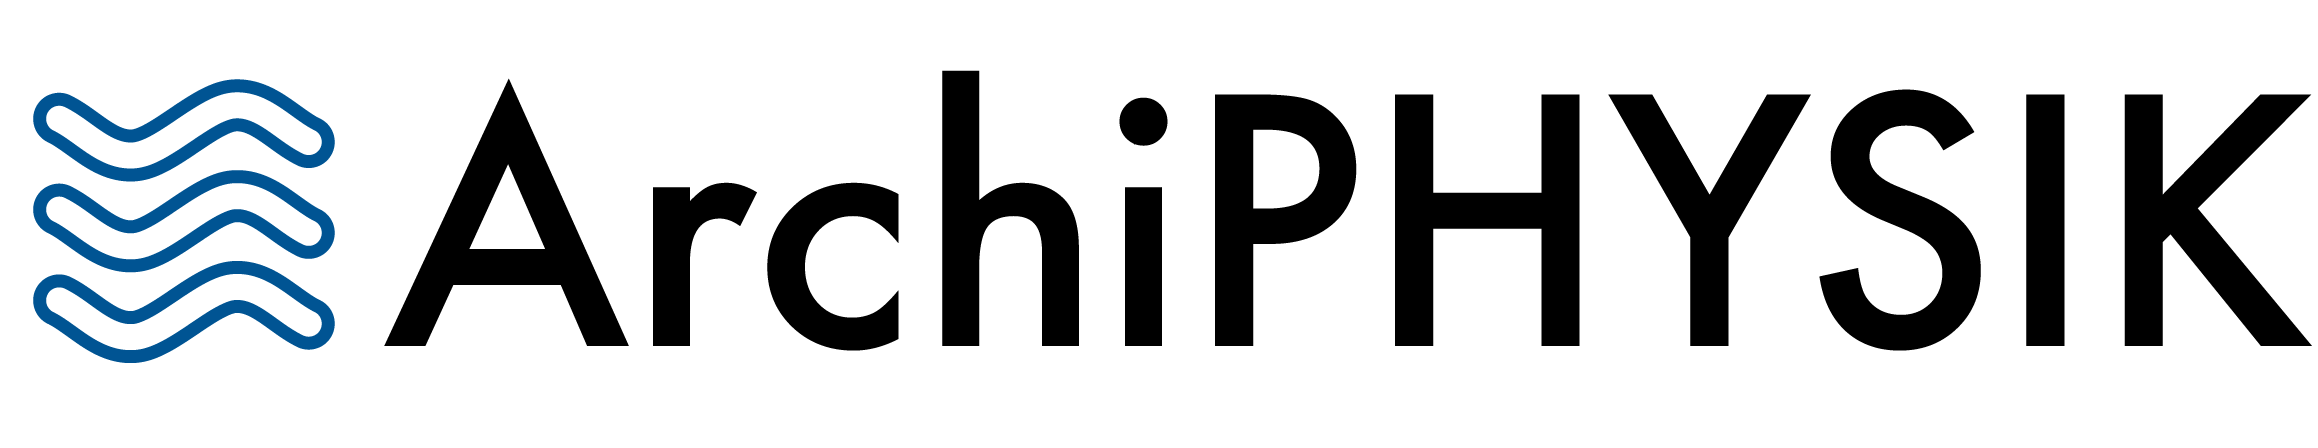 Archiphysik-Logo